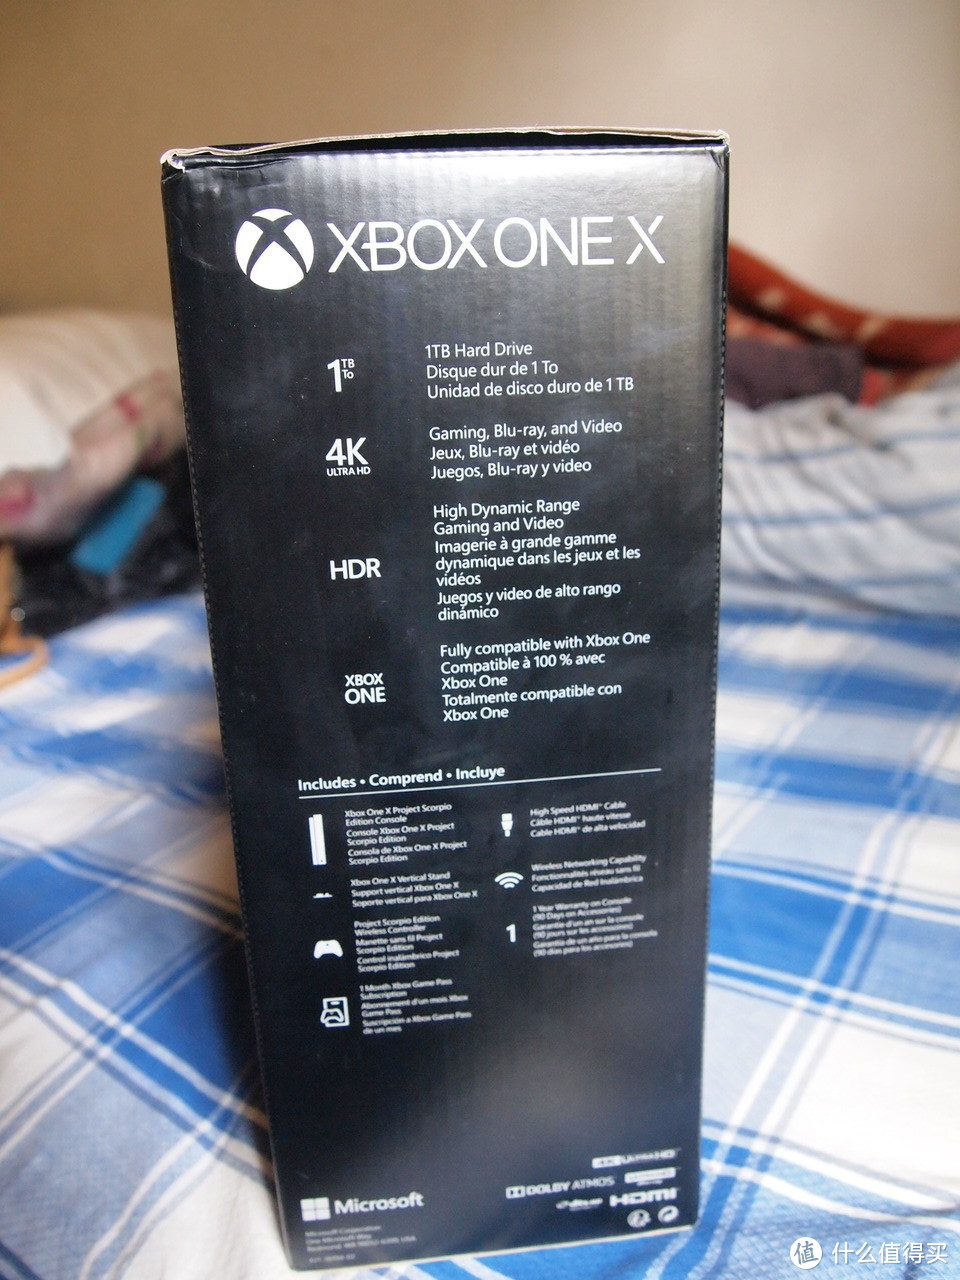 世上最強大的主机—Microsoft 微软 Xbox One X天蝎限量版 游戏机 开箱